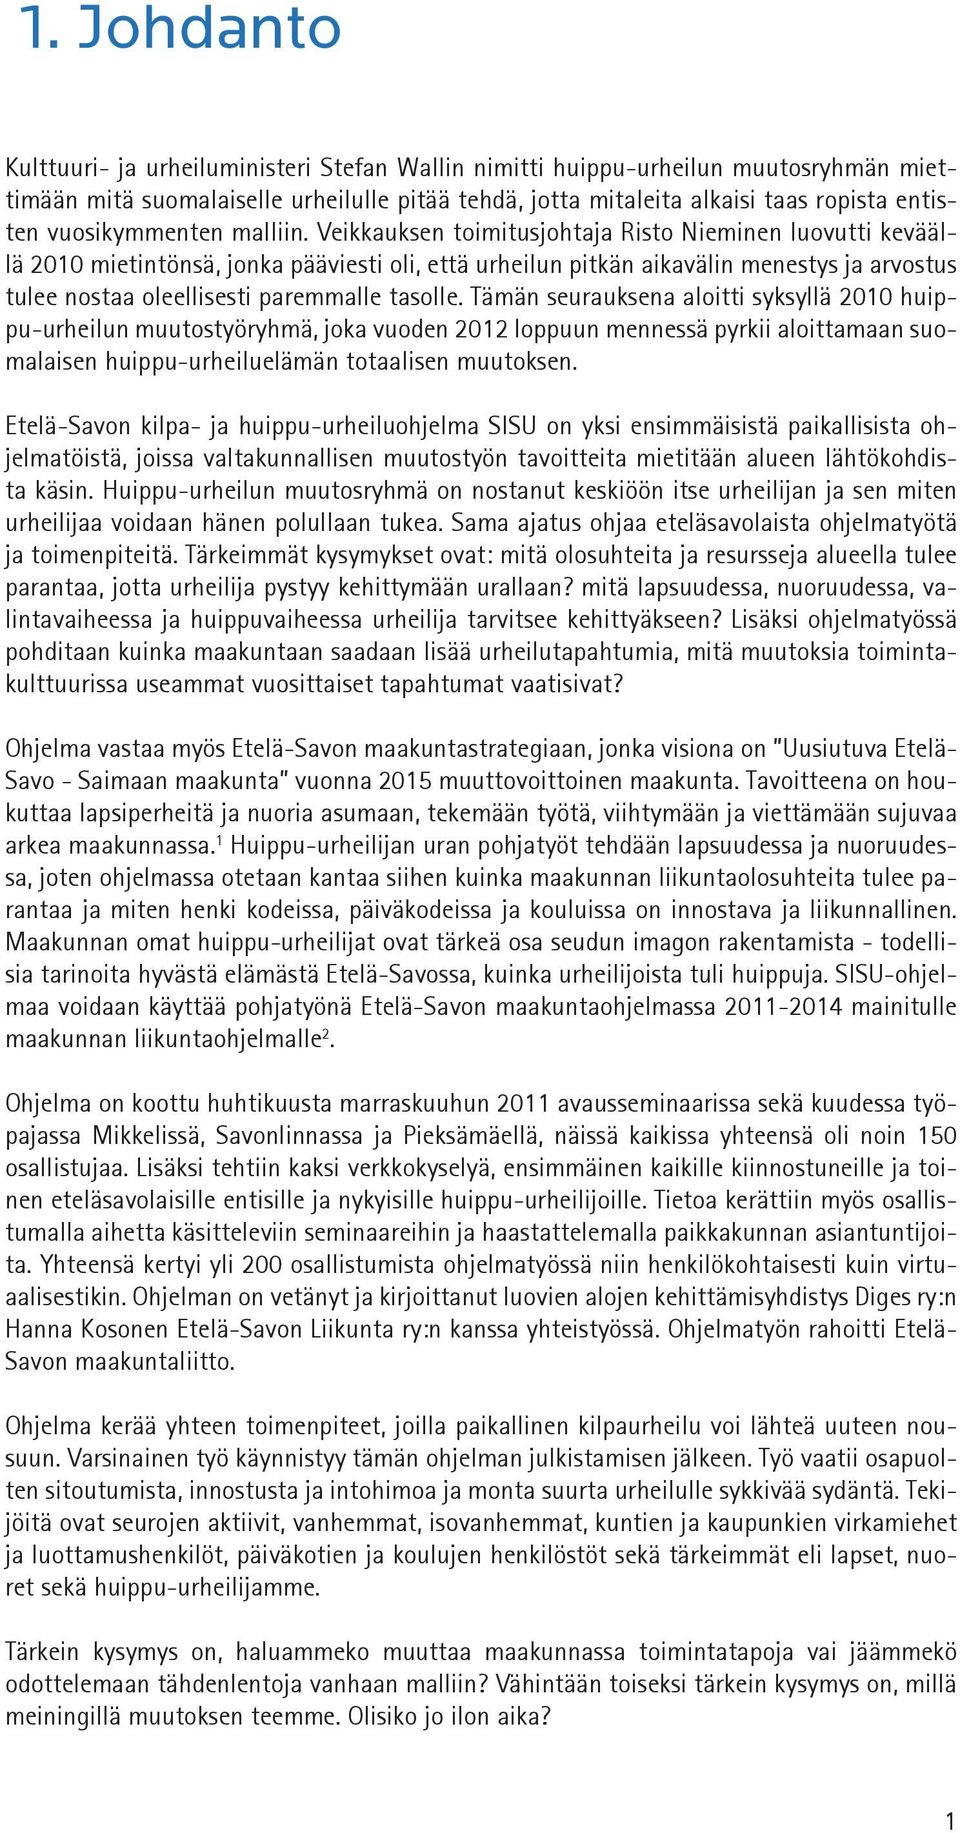 Veikkauksen toimitusjohtaja Risto Nieminen luovutti keväällä 2010 mietintönsä, jonka pääviesti oli, että urheilun pitkän aikavälin menestys ja arvostus tulee nostaa oleellisesti paremmalle tasolle.